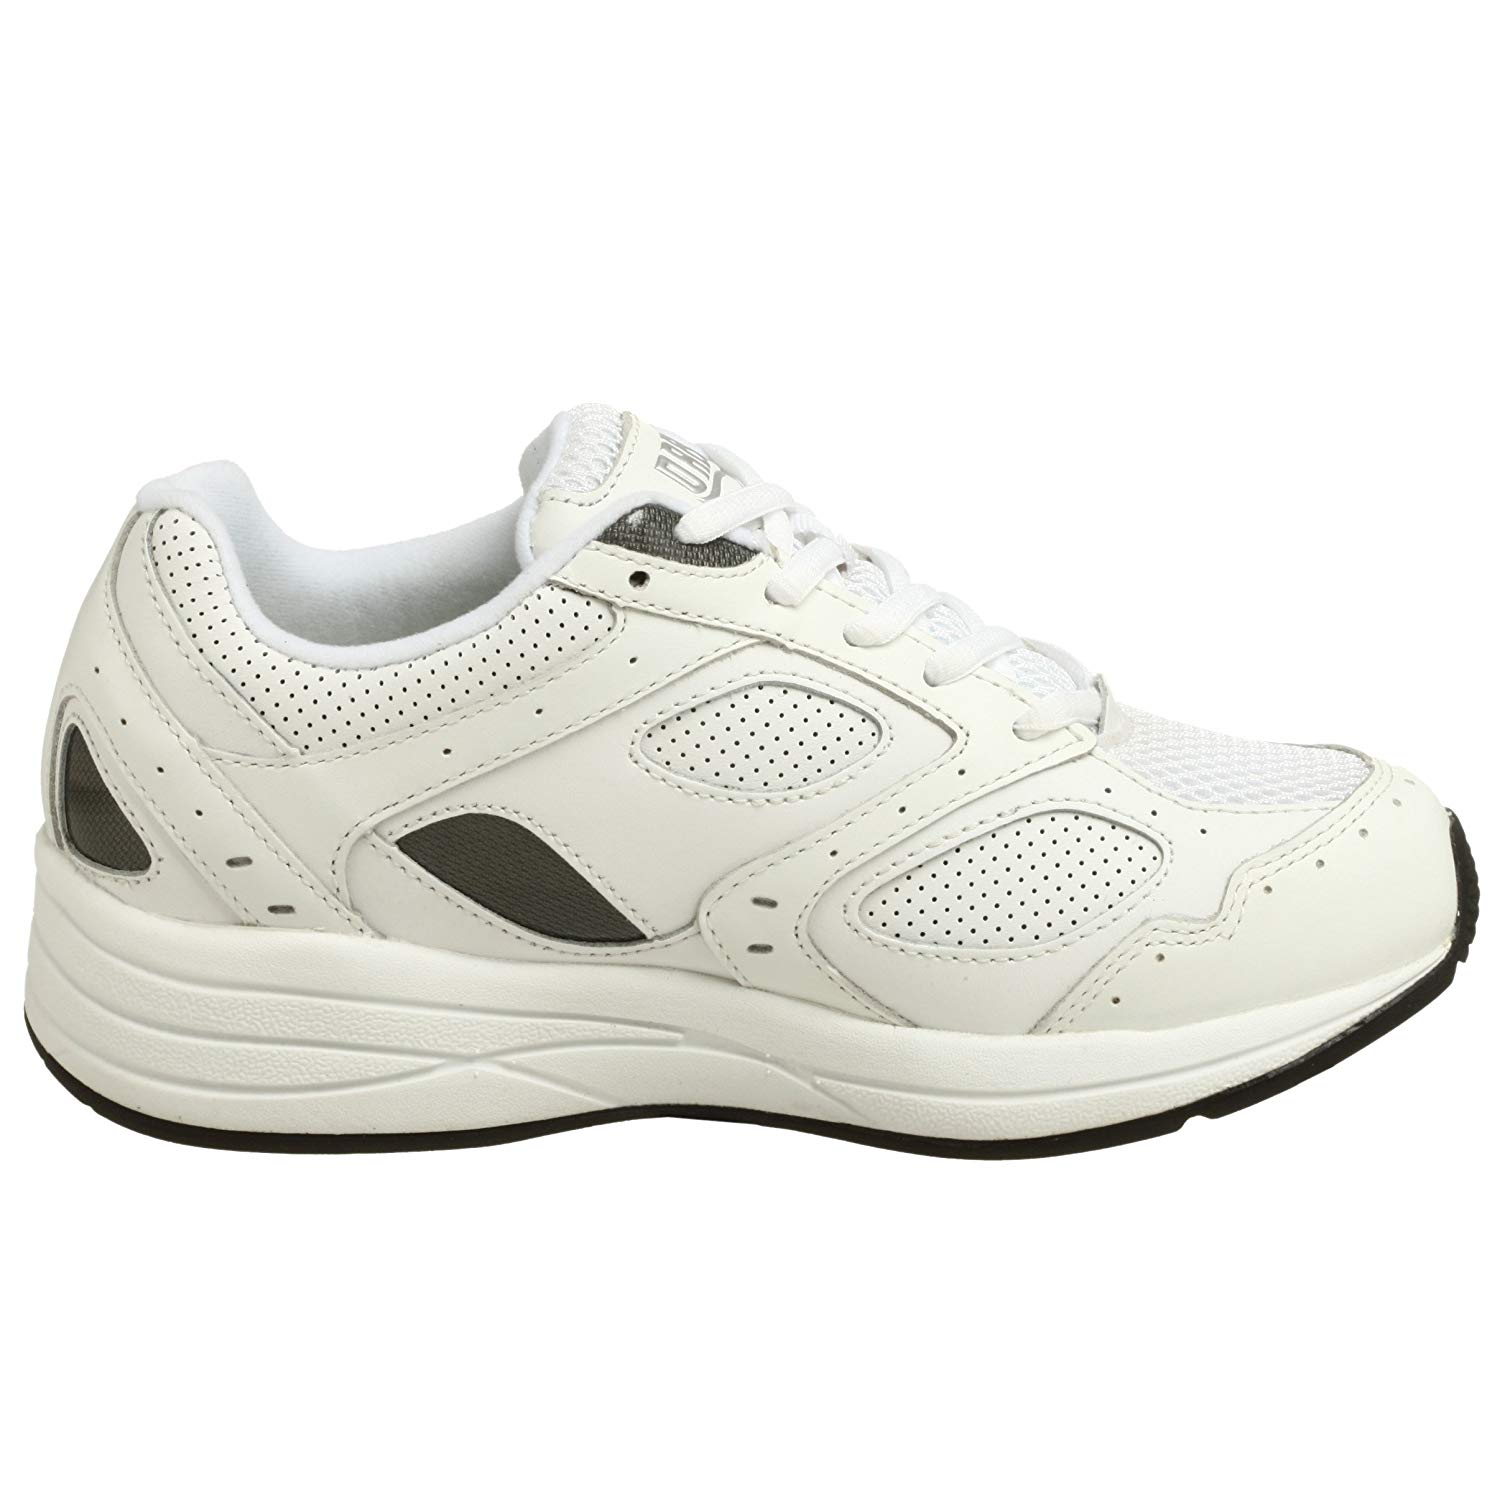 Drew Shoe Women's Flare Walking Shoe, White, Size 11.5 9JnQ | eBay